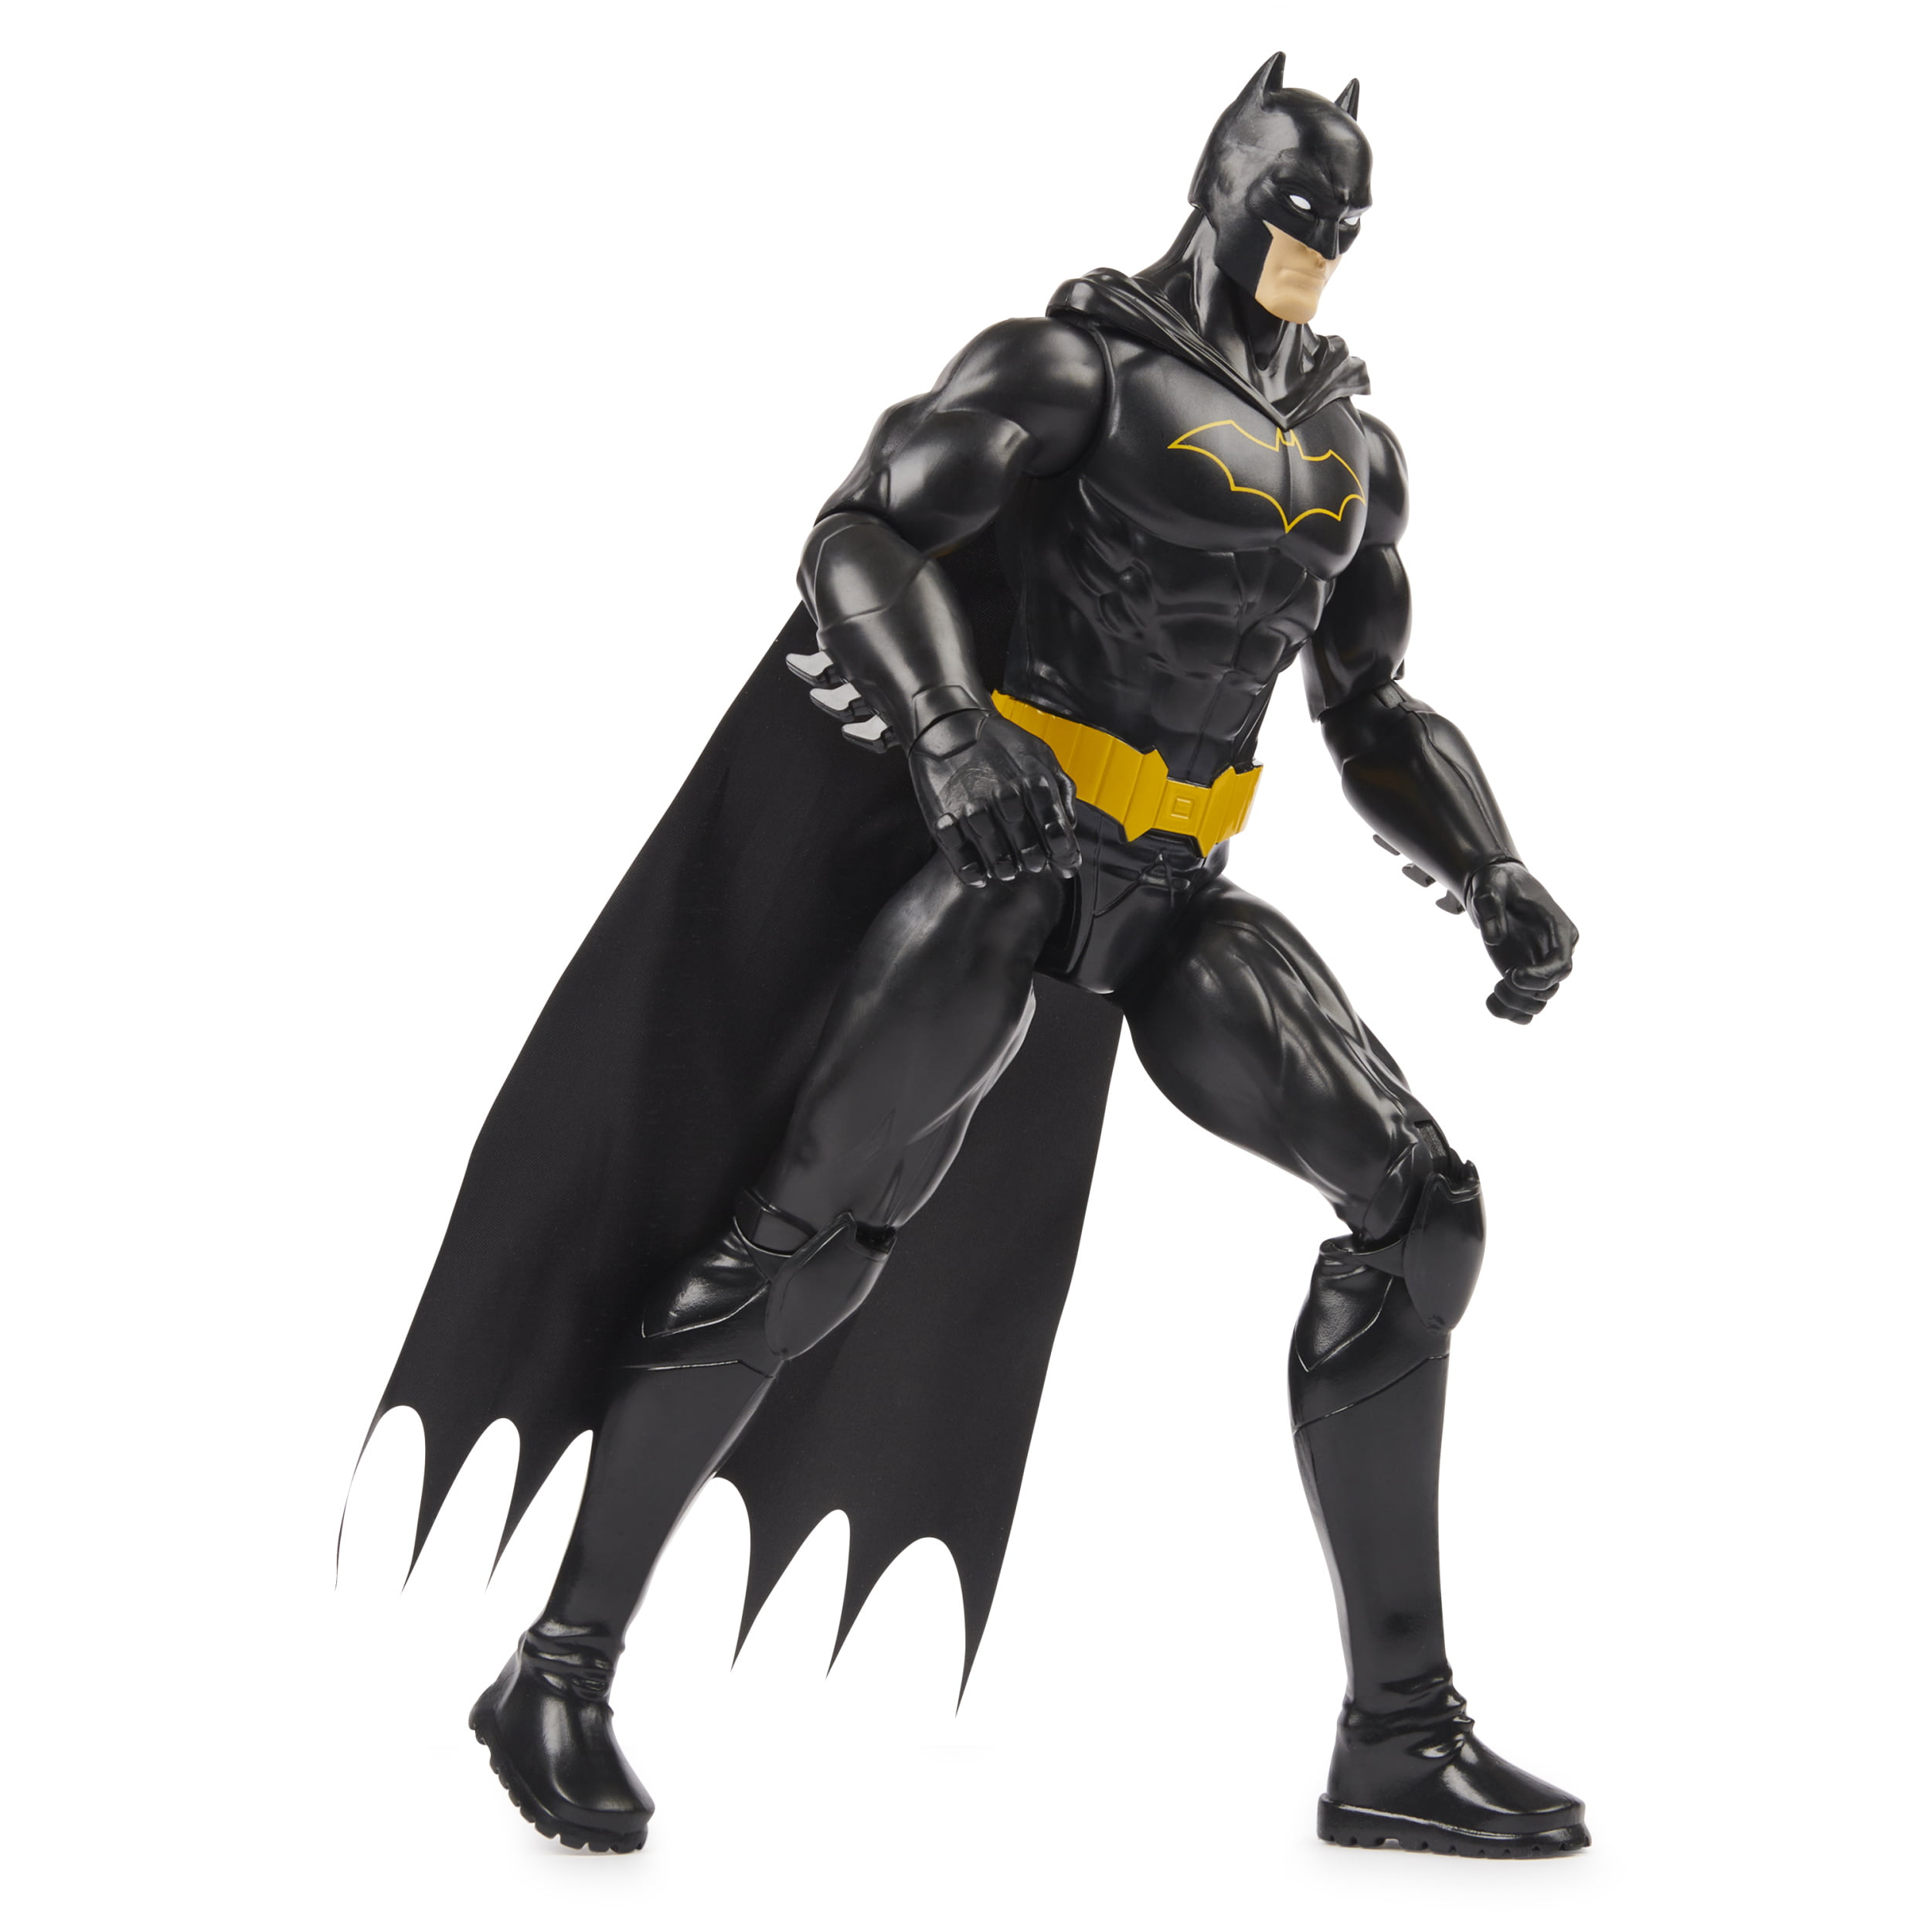 Details about   Batman Justice League Miniature Figurine DC Comics Black Cape Grey Figure 